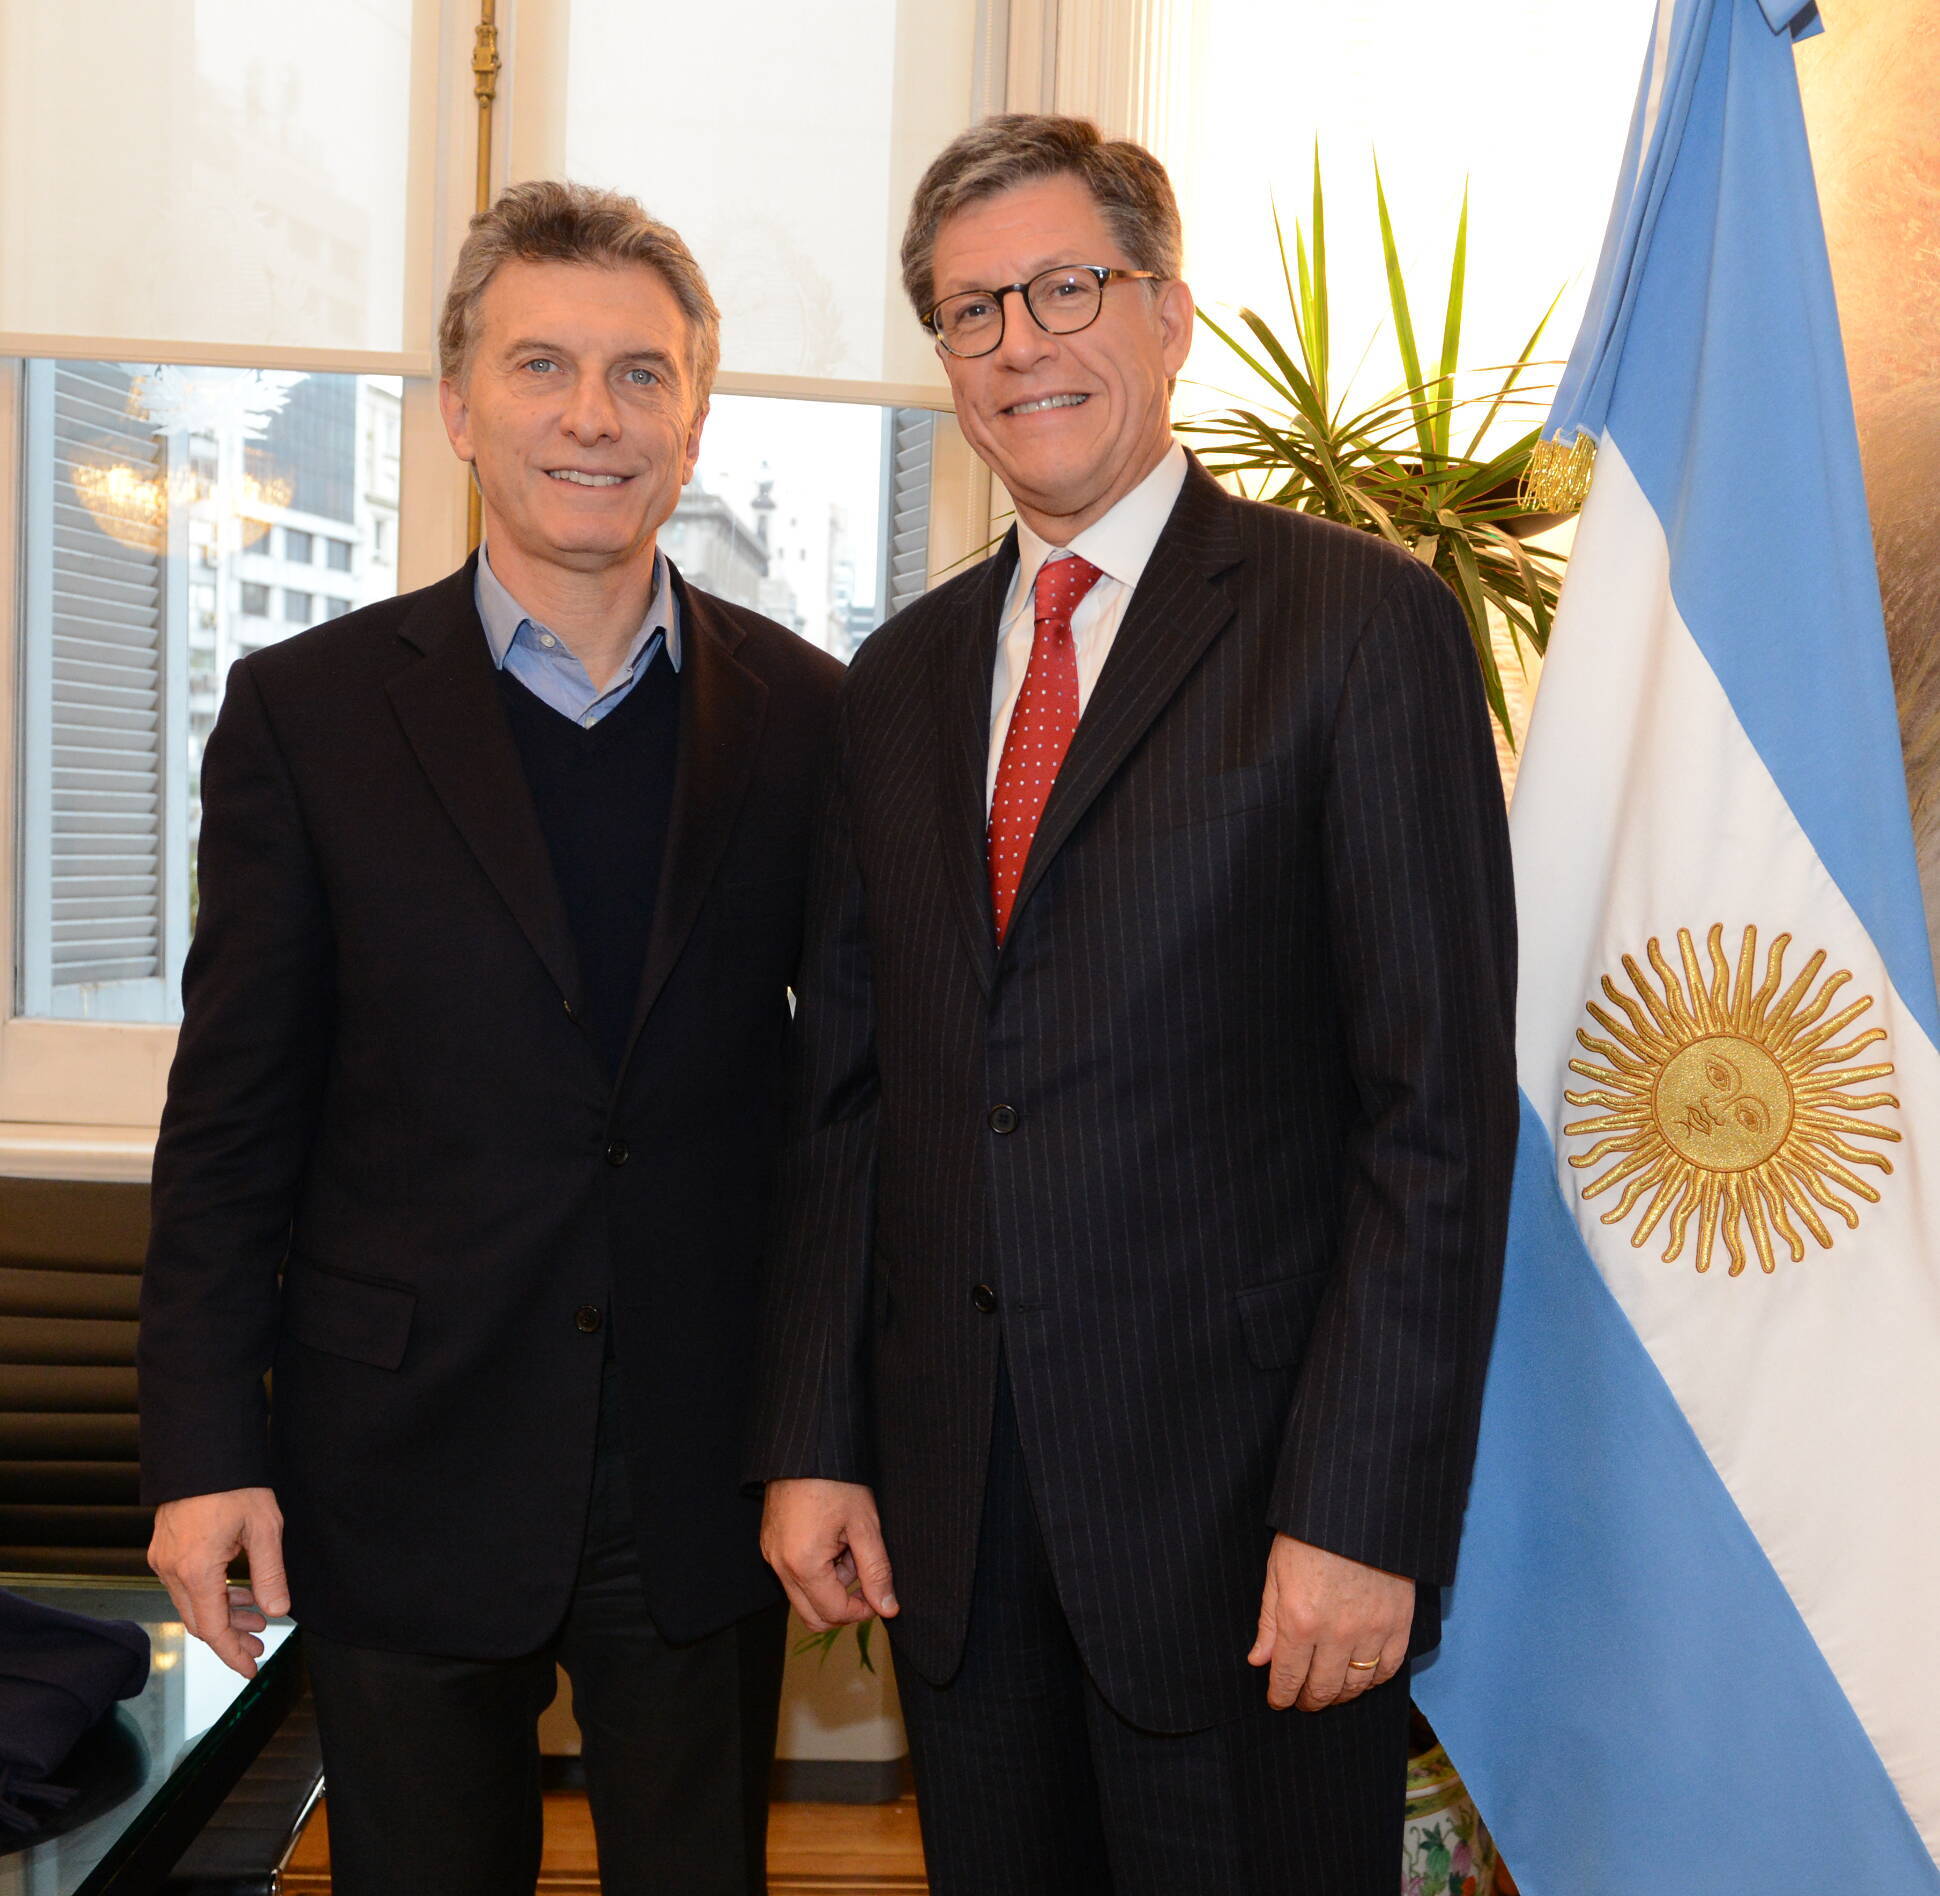 El presidente Mauricio Macri recibió al director de Human Rights Watch